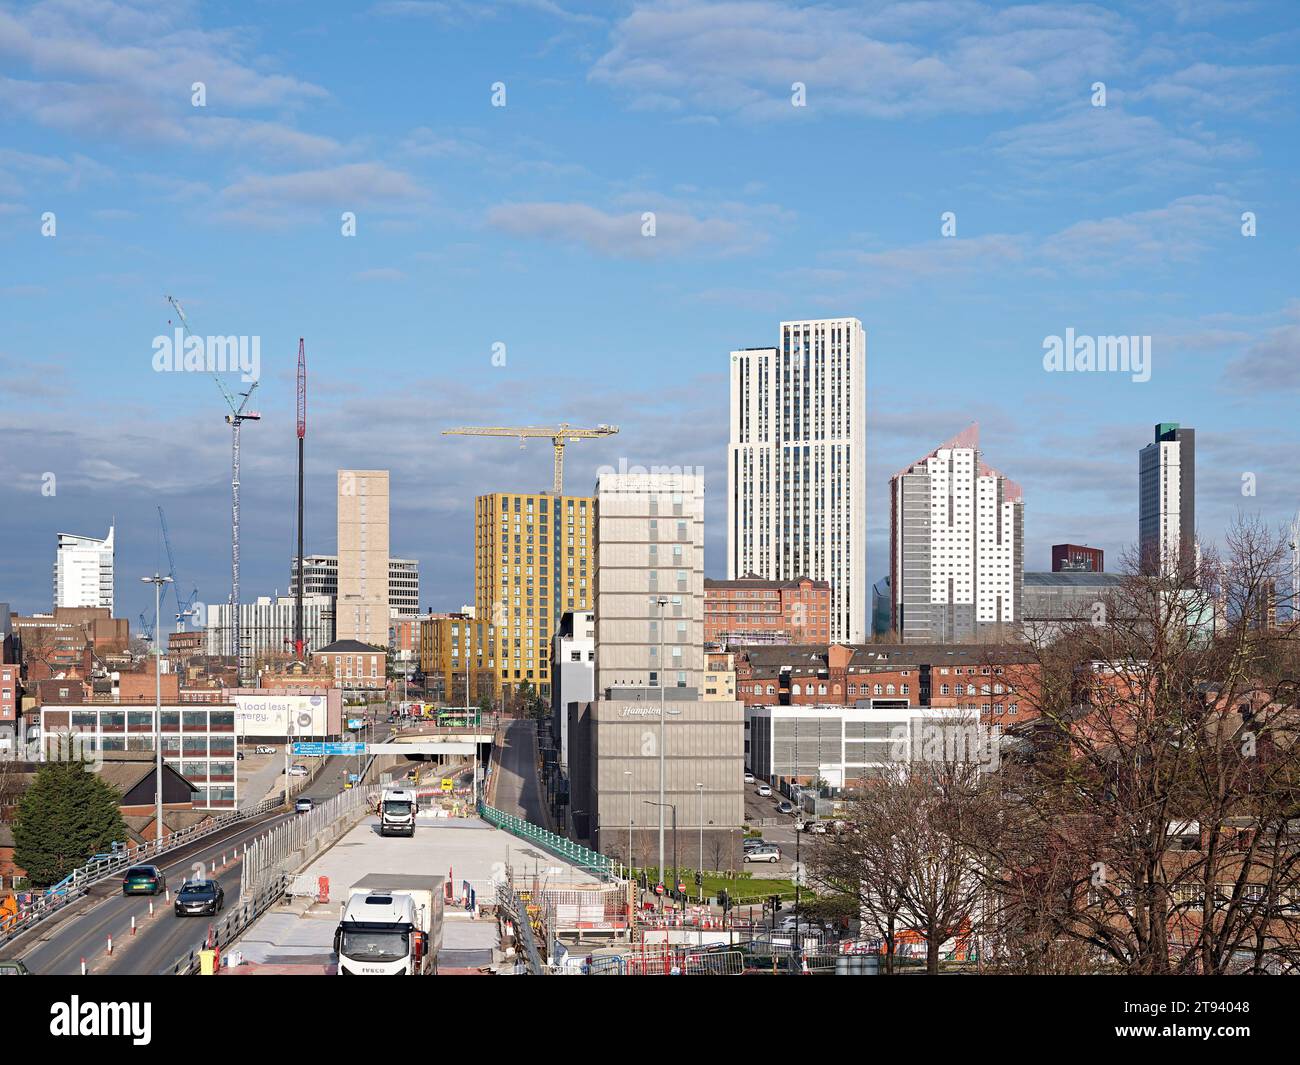 Blick auf die Stadt mit Hochhaus. Altus House, Leeds, Großbritannien. Architekt: O'Connell East Architects, 2022. Stockfoto